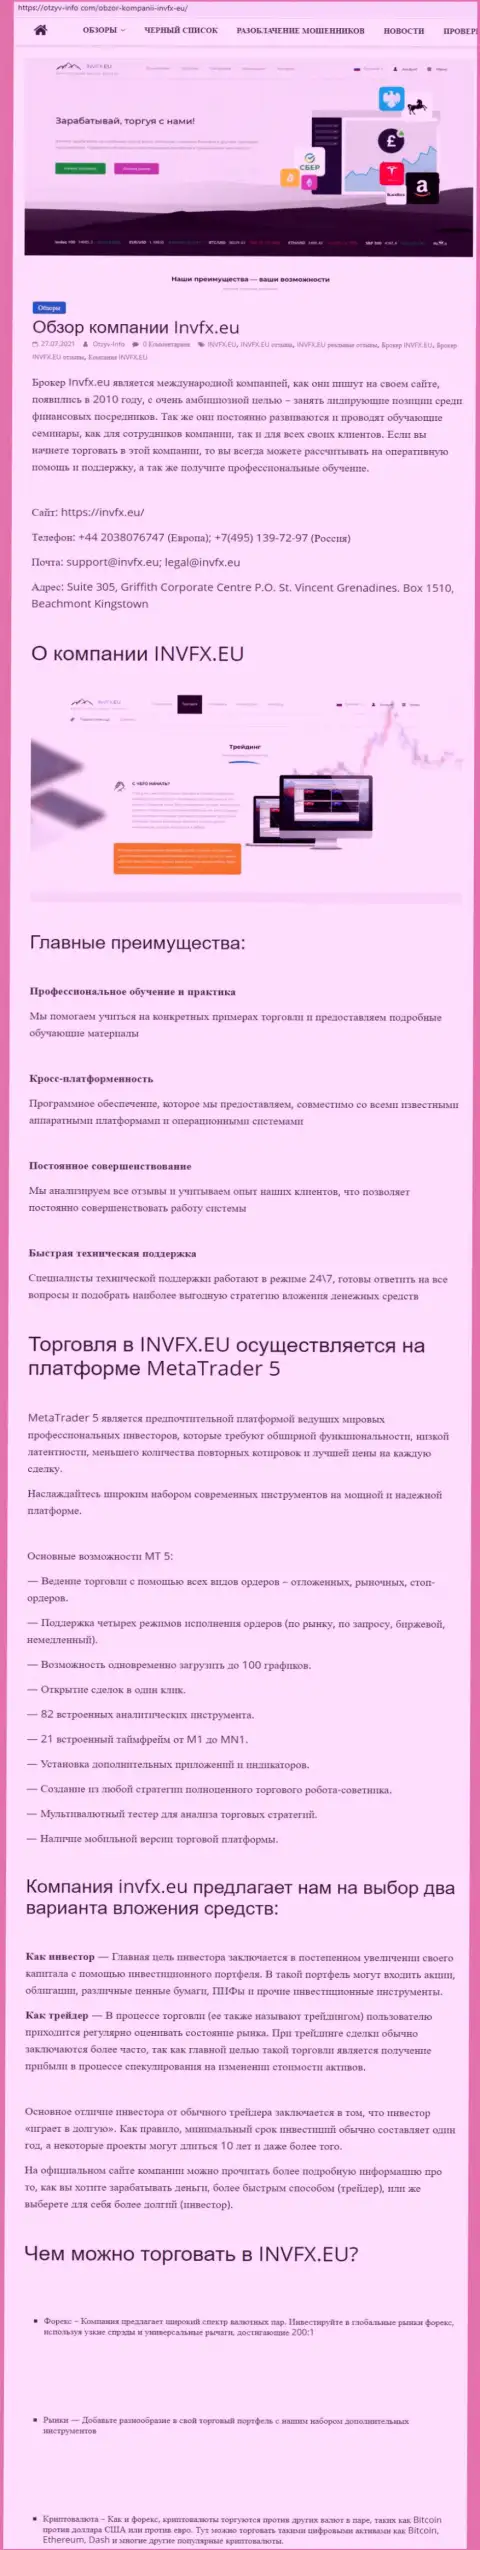 Онлайн-сервис otzyv-info com опубликовал статью о форекс-дилинговой организации INVFX